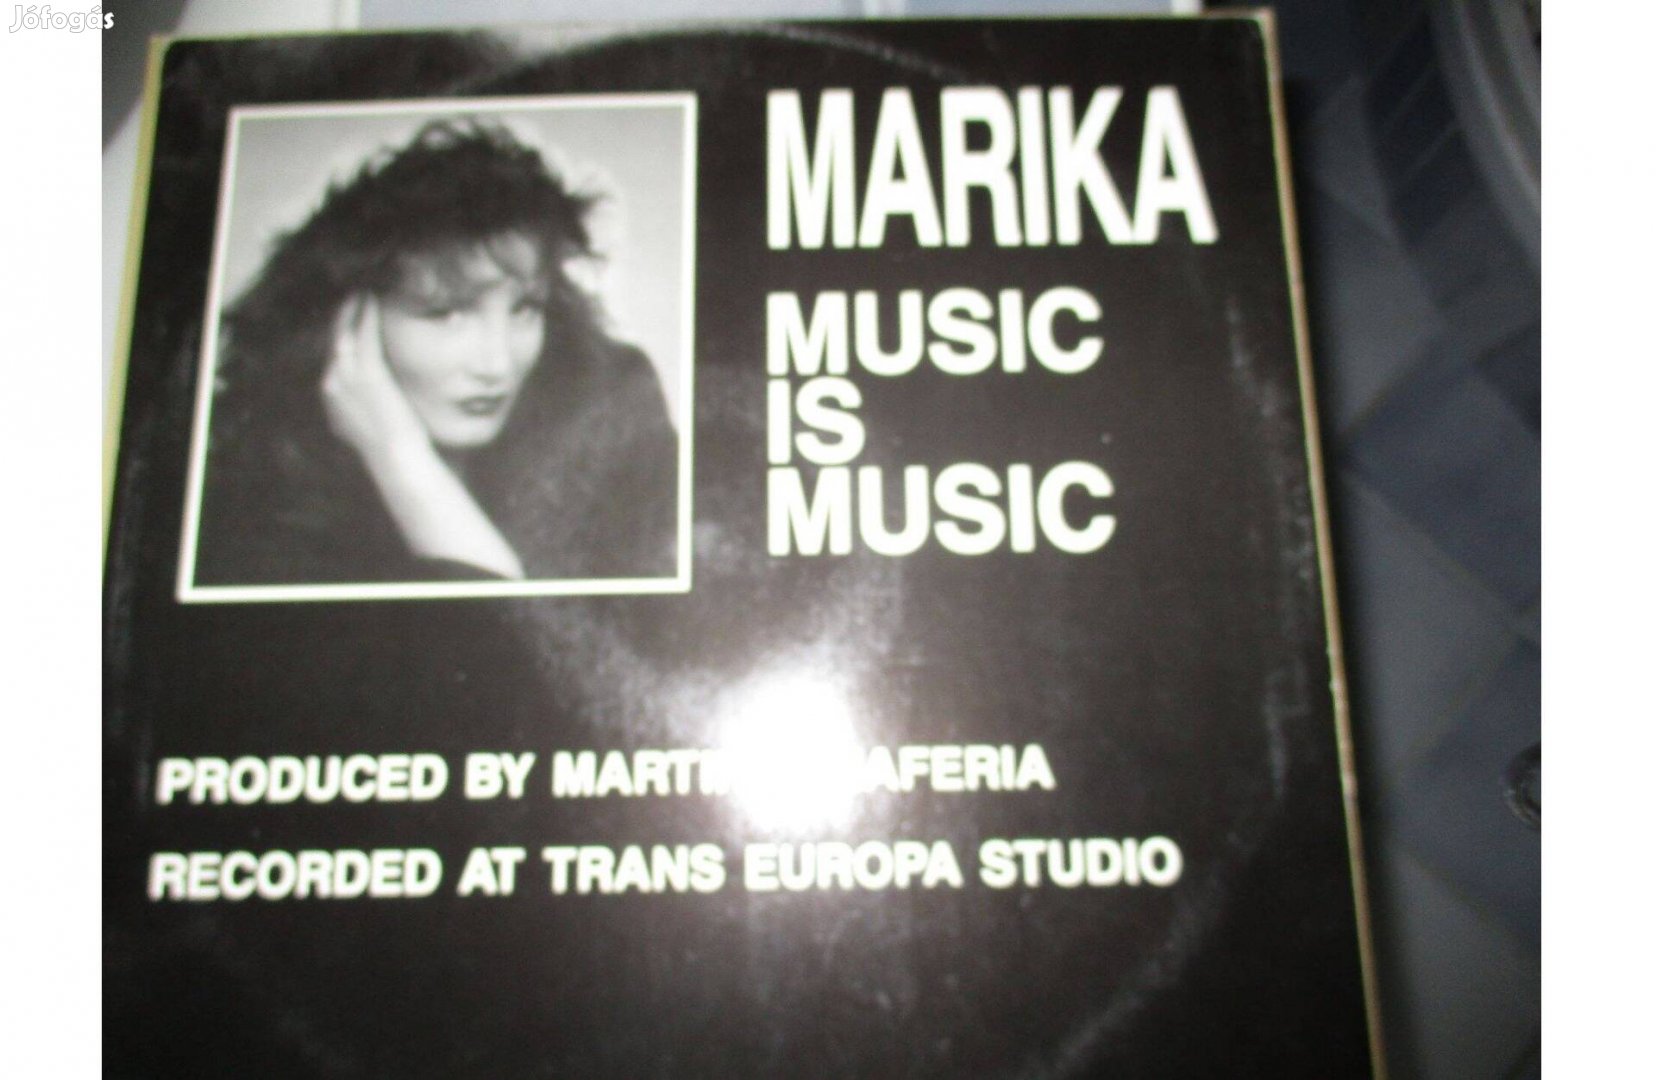 Marika maxi bakelit hanglemez eladó